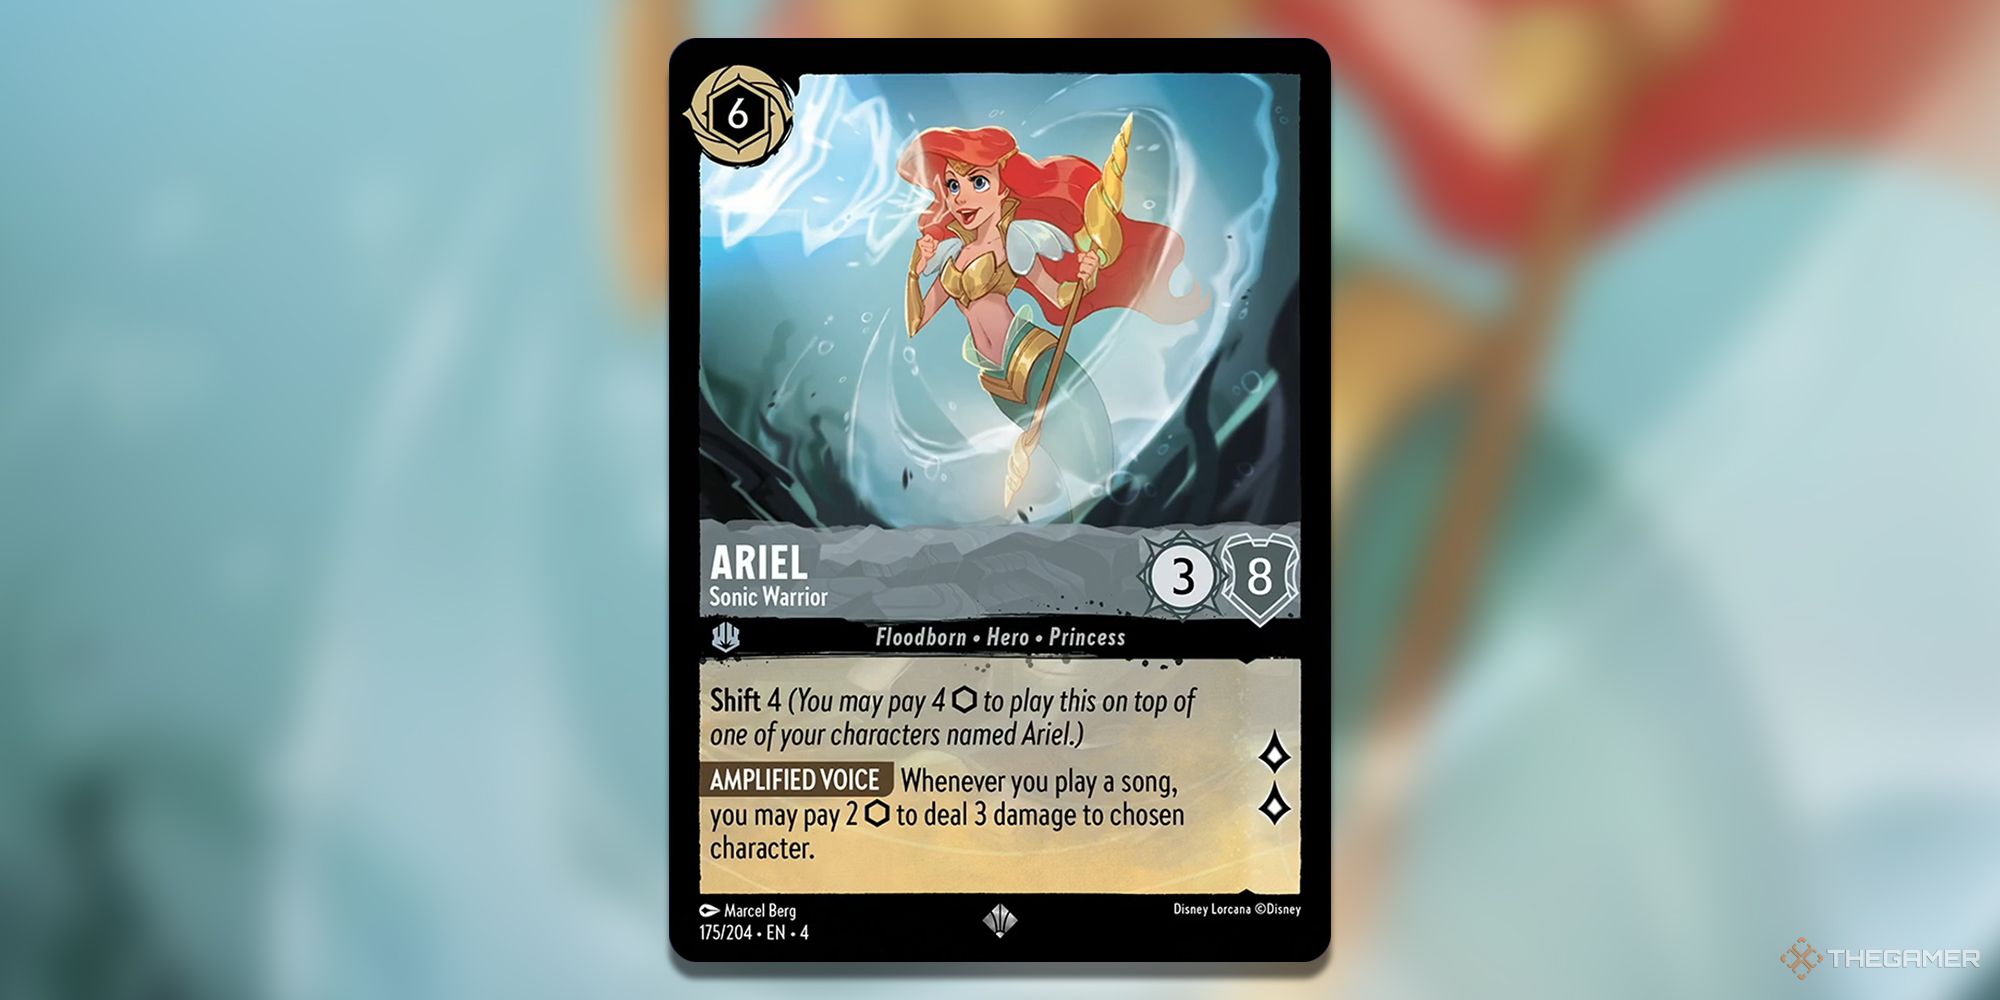 Ariel, Sonic Warrior